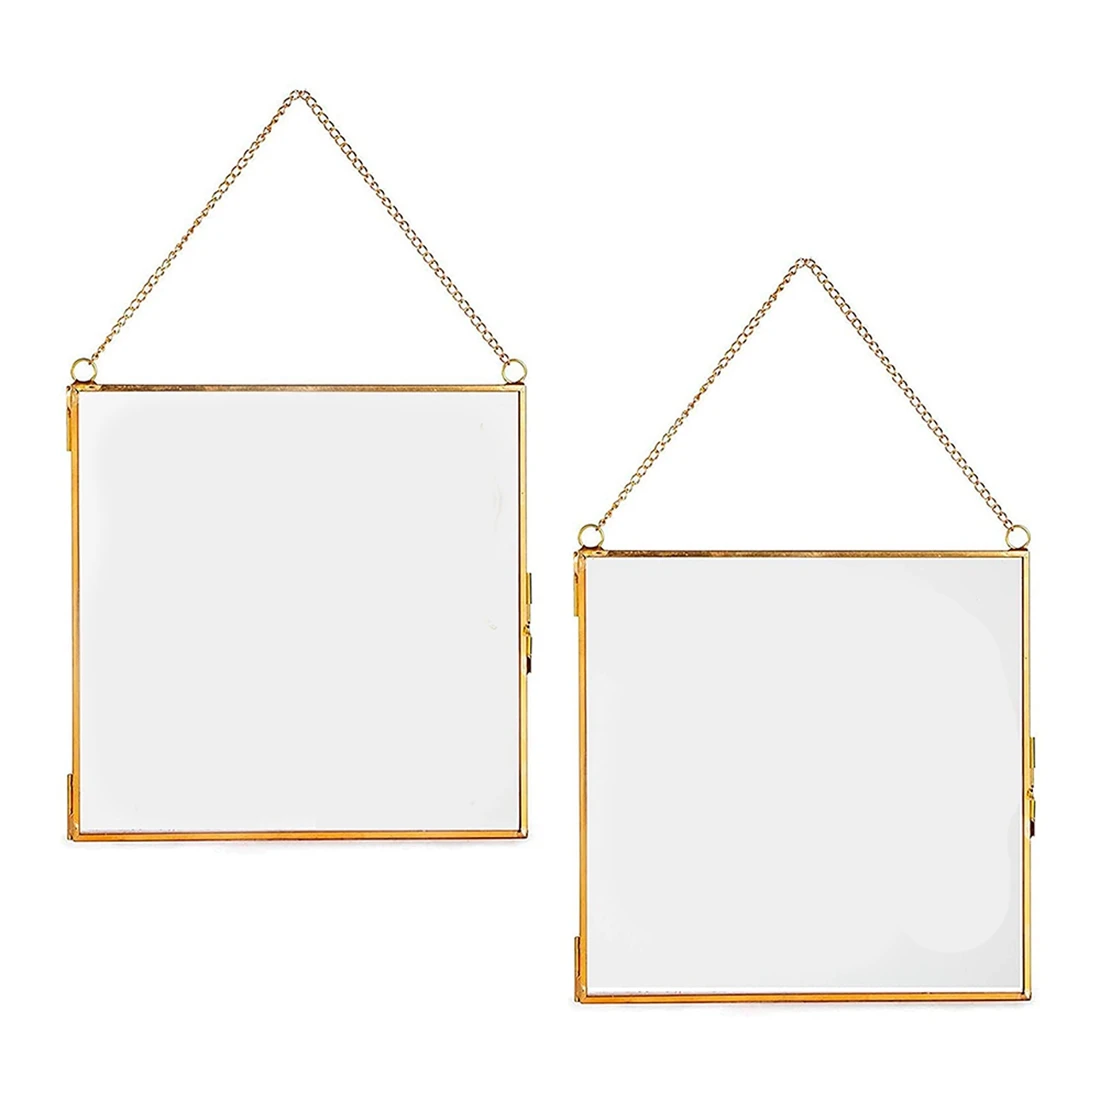 

2 шт. стеклянная рамка для прессованных цветов, квадратные металлические рамки для картин с листьями и рисунком, прозрачные двойные стеклянные плавающие рамки